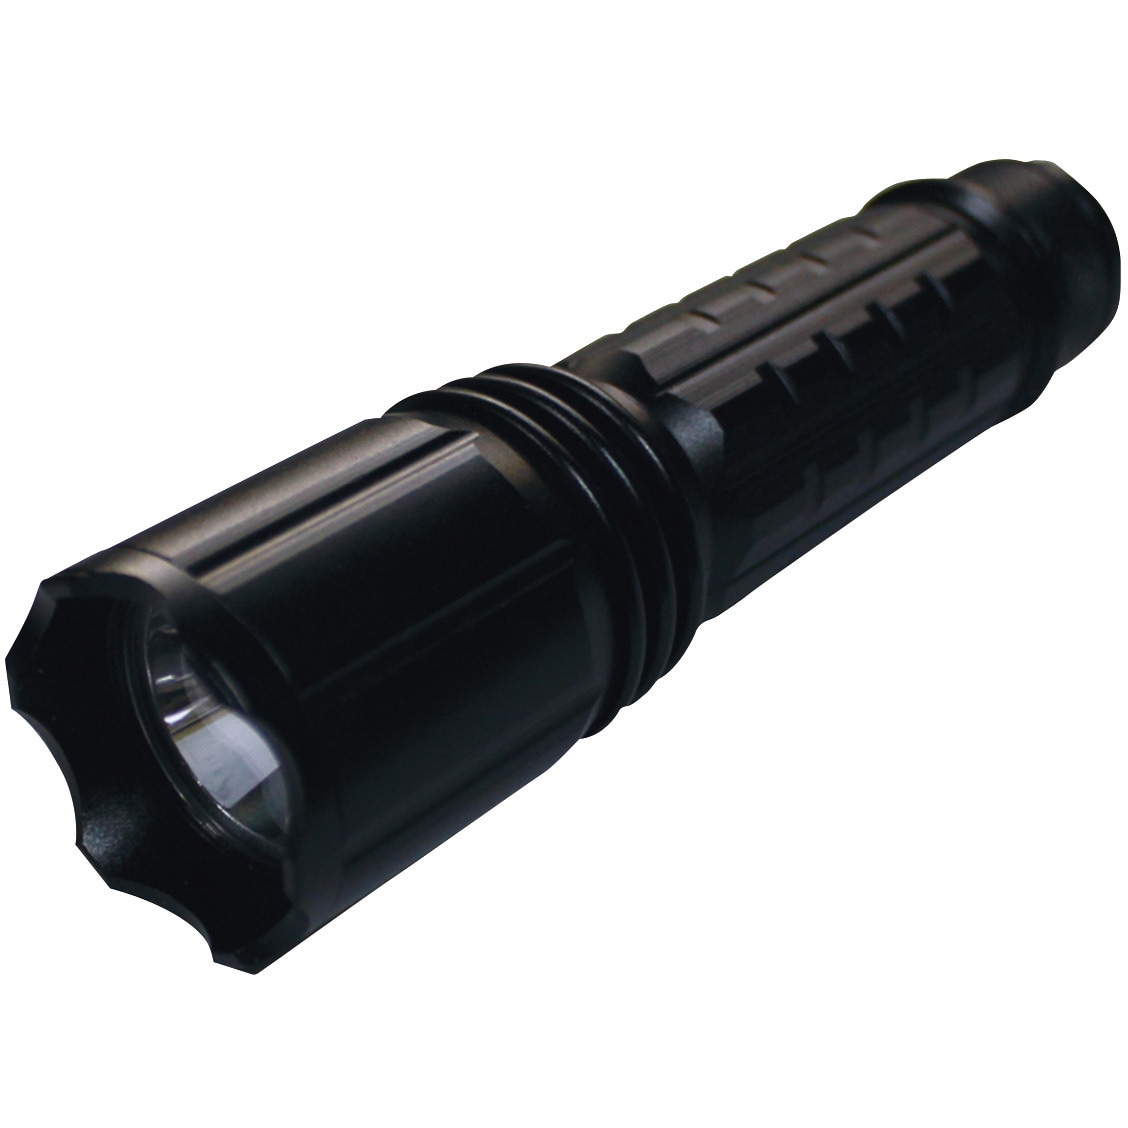 UV-SU405-01RB Hydrangea ブラックライト 高出力(ノーマル照射)充電池タイプ 1個 Hydrangea  【通販サイトMonotaRO】